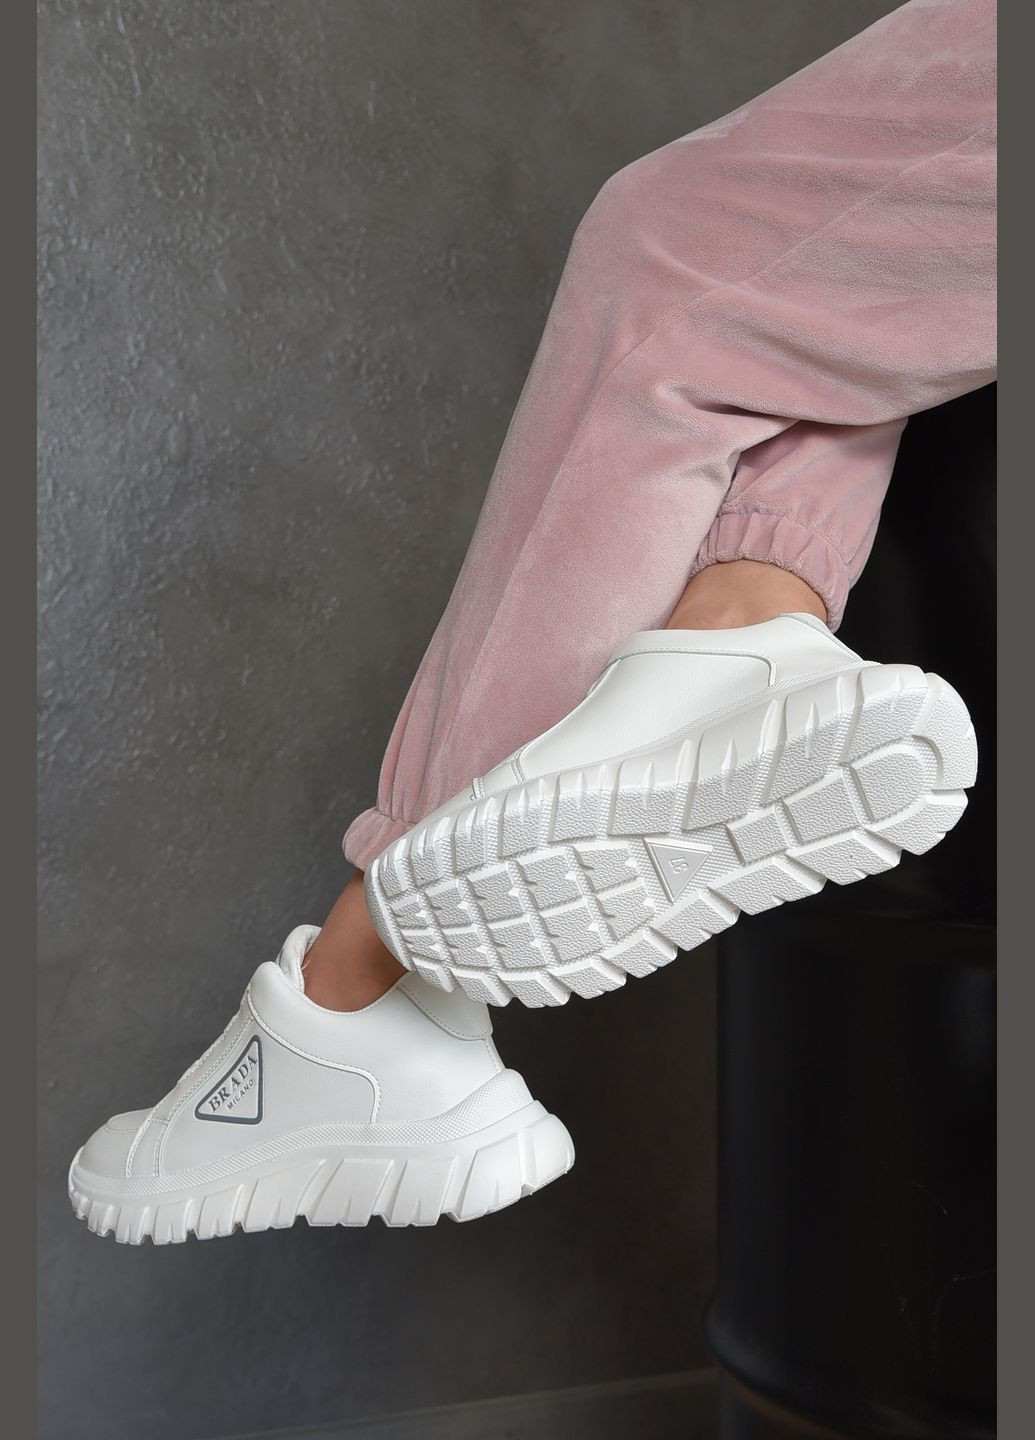 Білі осінні кросівки жіночі білого кольору Let's Shop